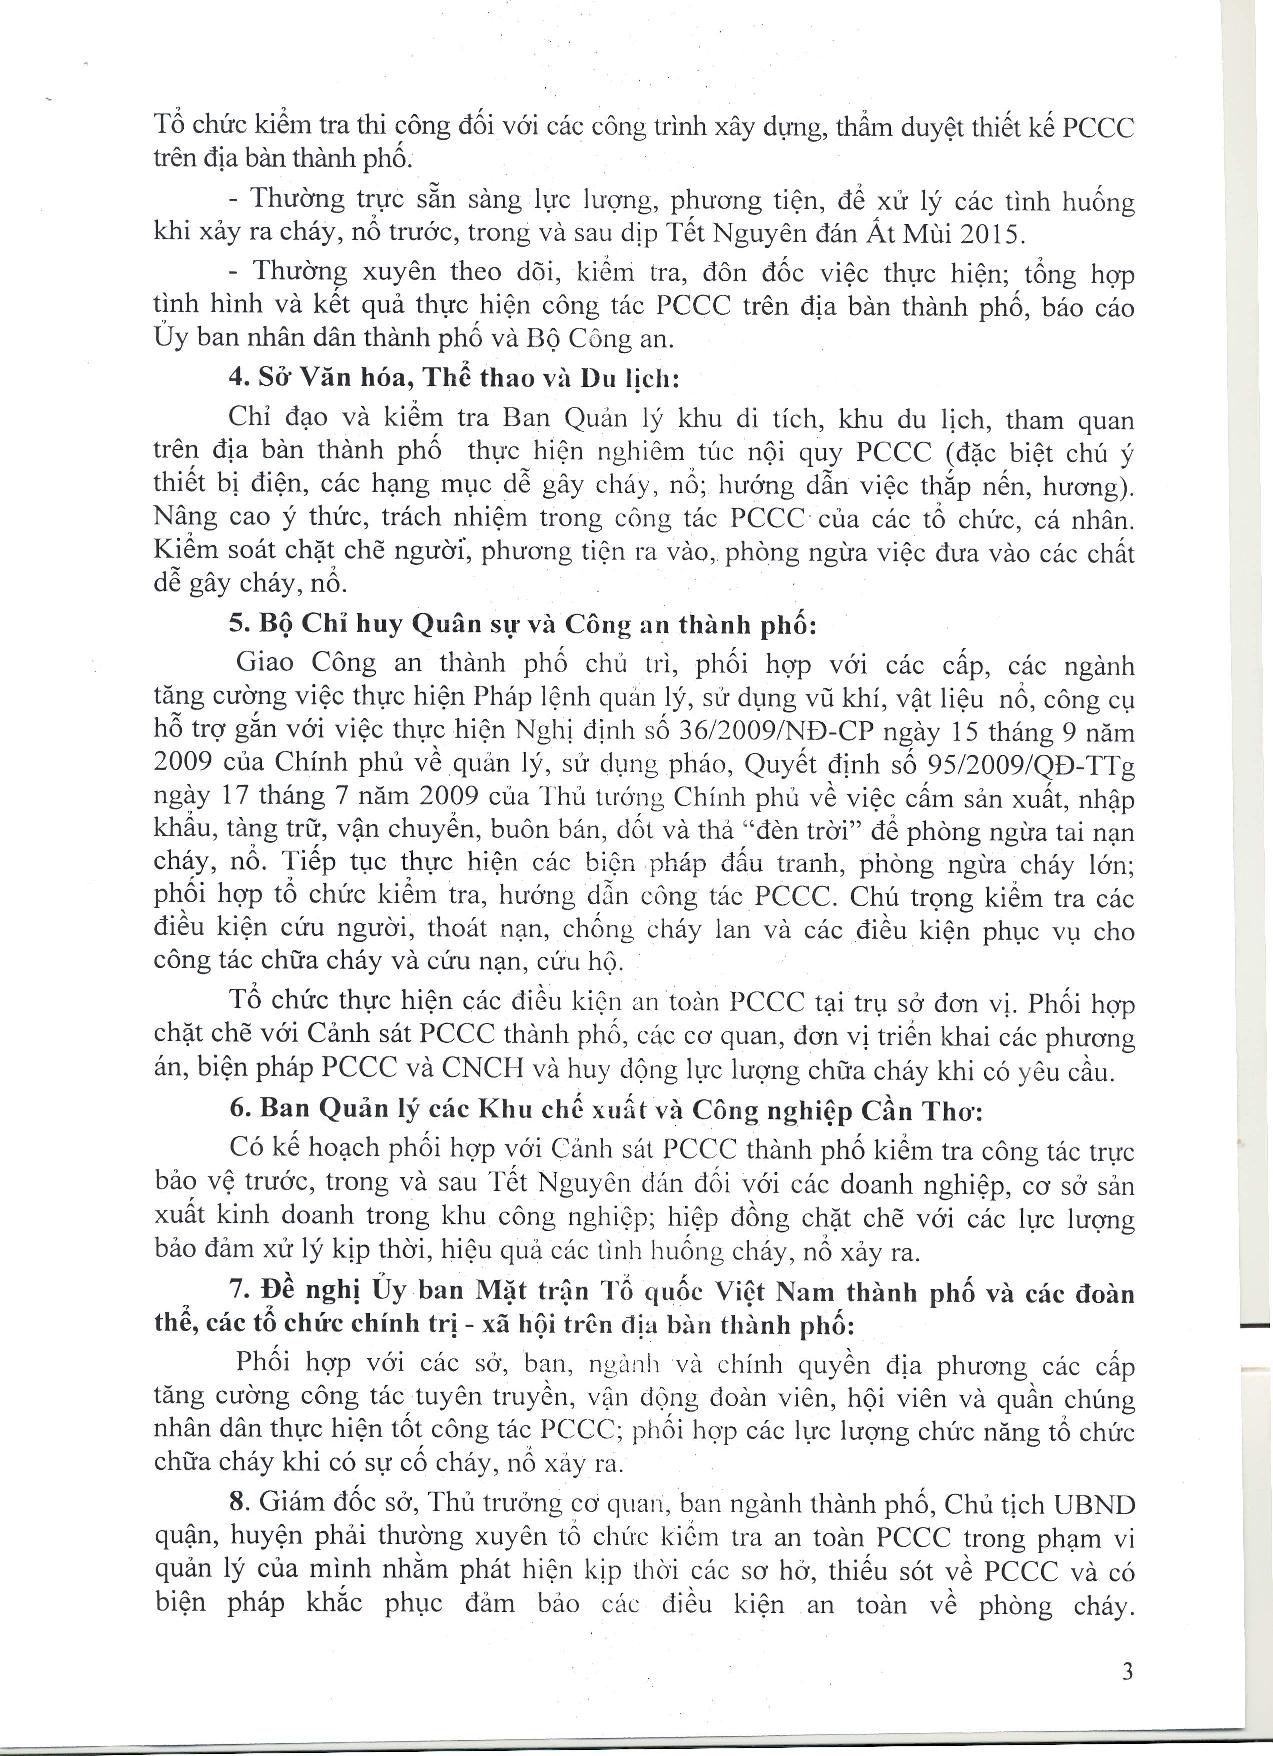 Tin 34-Tang cuong cong tac PCCC-page-003.jpg